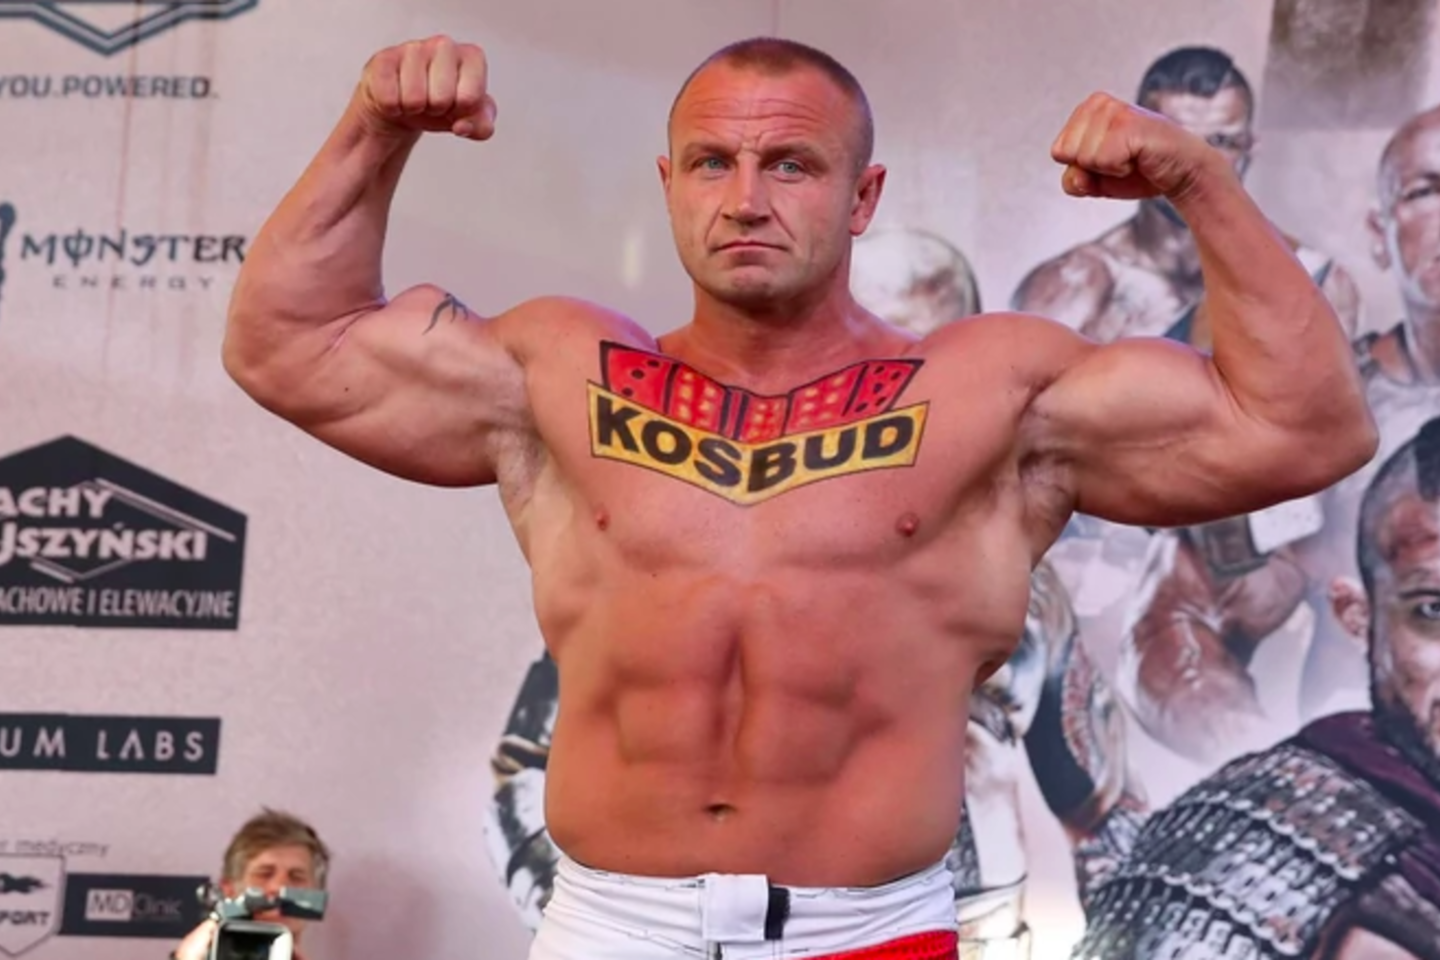  Buvusi pasaulio galiūnų sporto superžvaigždė Mariuszas Pudzianowskis po beveik pusantrų metų pertraukos vėl žengs į MMA (Mišrių kovos menų) narvą.<br> sport.onet.pl nuotr.